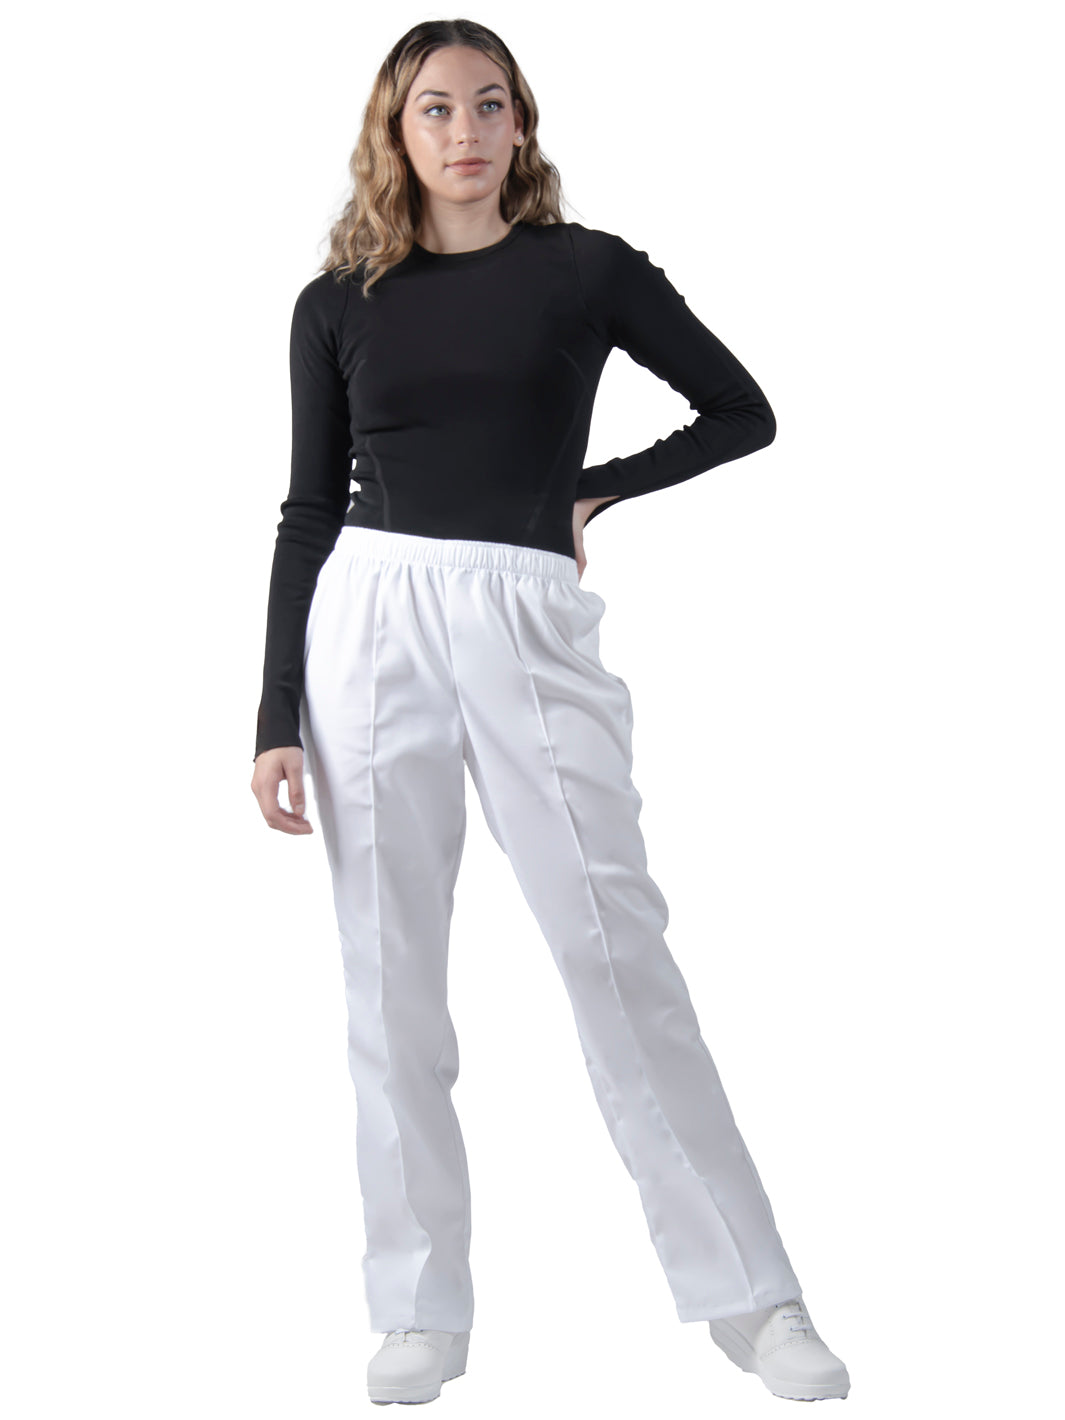 Joven utilizando pantalón blanco para uso clínico de corte recto con cintura elástica